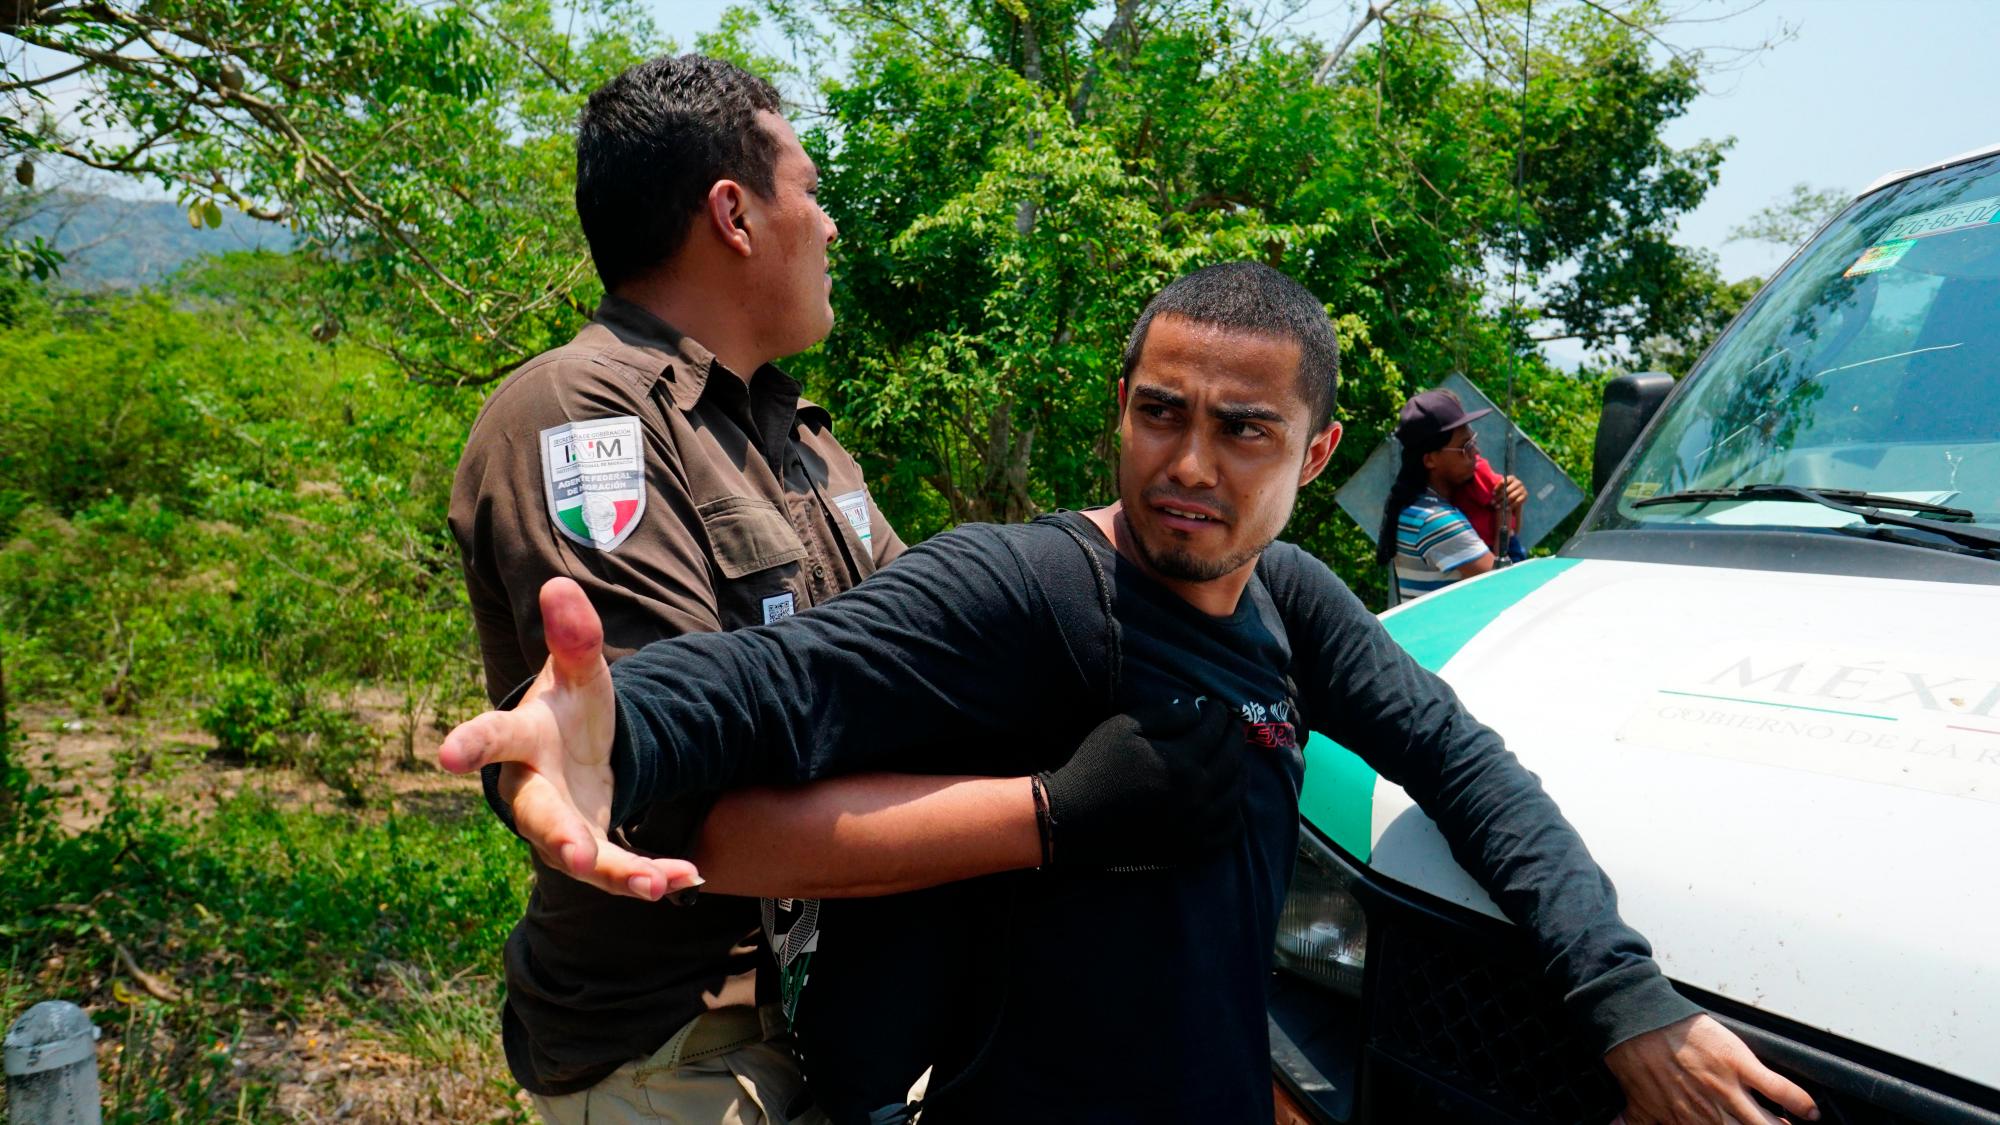 Miembros del Instituto Nacional de Migración de México (Inami) detienen a un hombre durante un operativo, en el municipio de Pijijiapan, en el estado de Chiapas (México). 